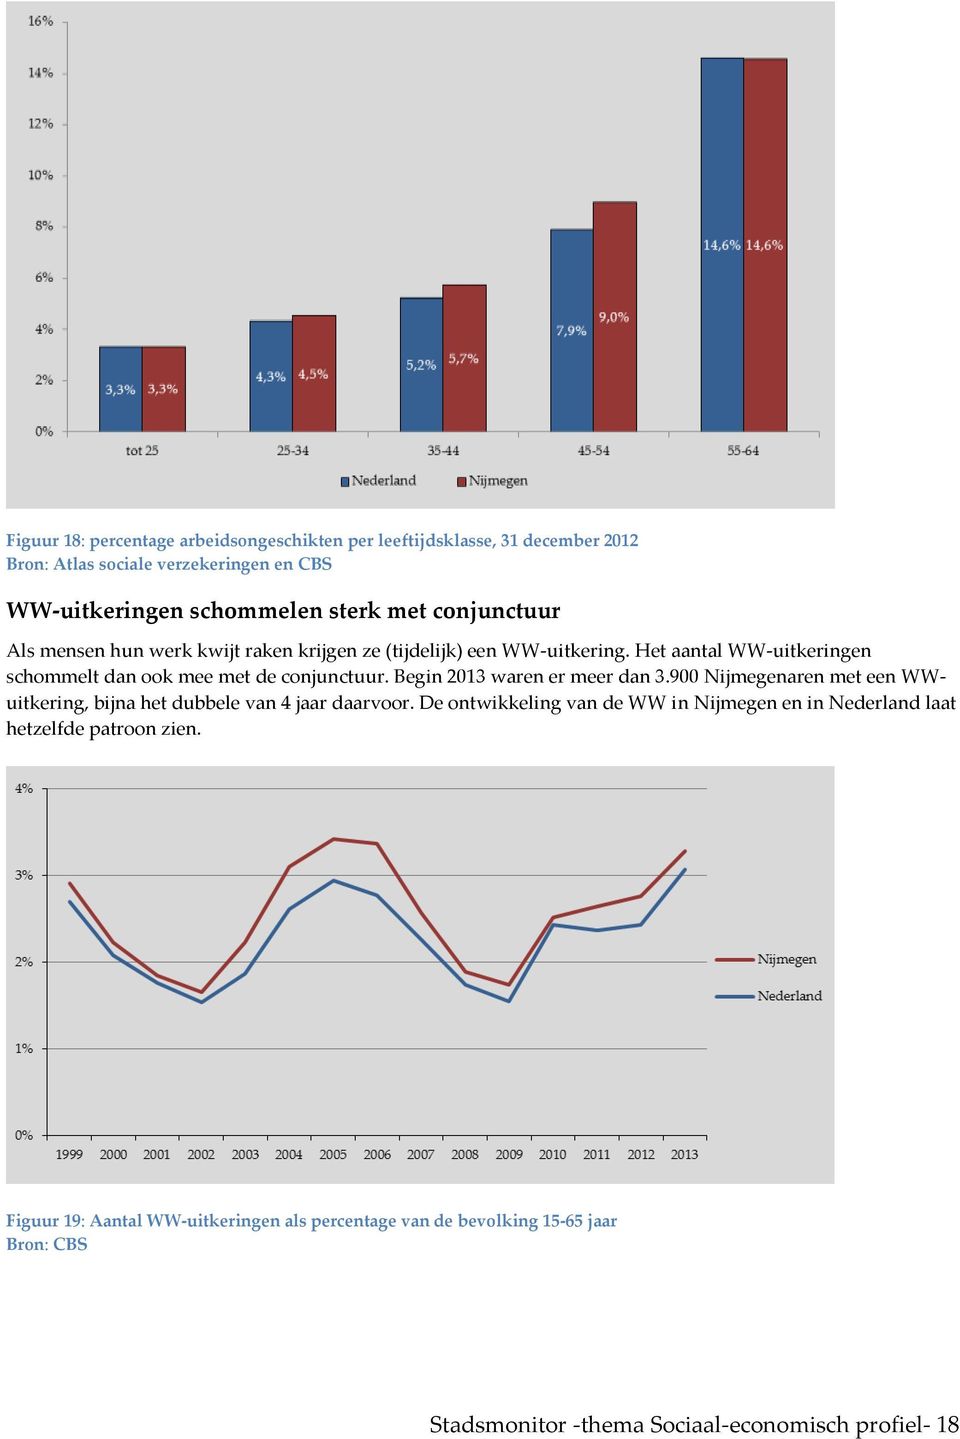 Begin 2013 waren er meer dan 3.900 Nijmegenaren met een WWuitkering, bijna het dubbele van 4 jaar daarvoor.